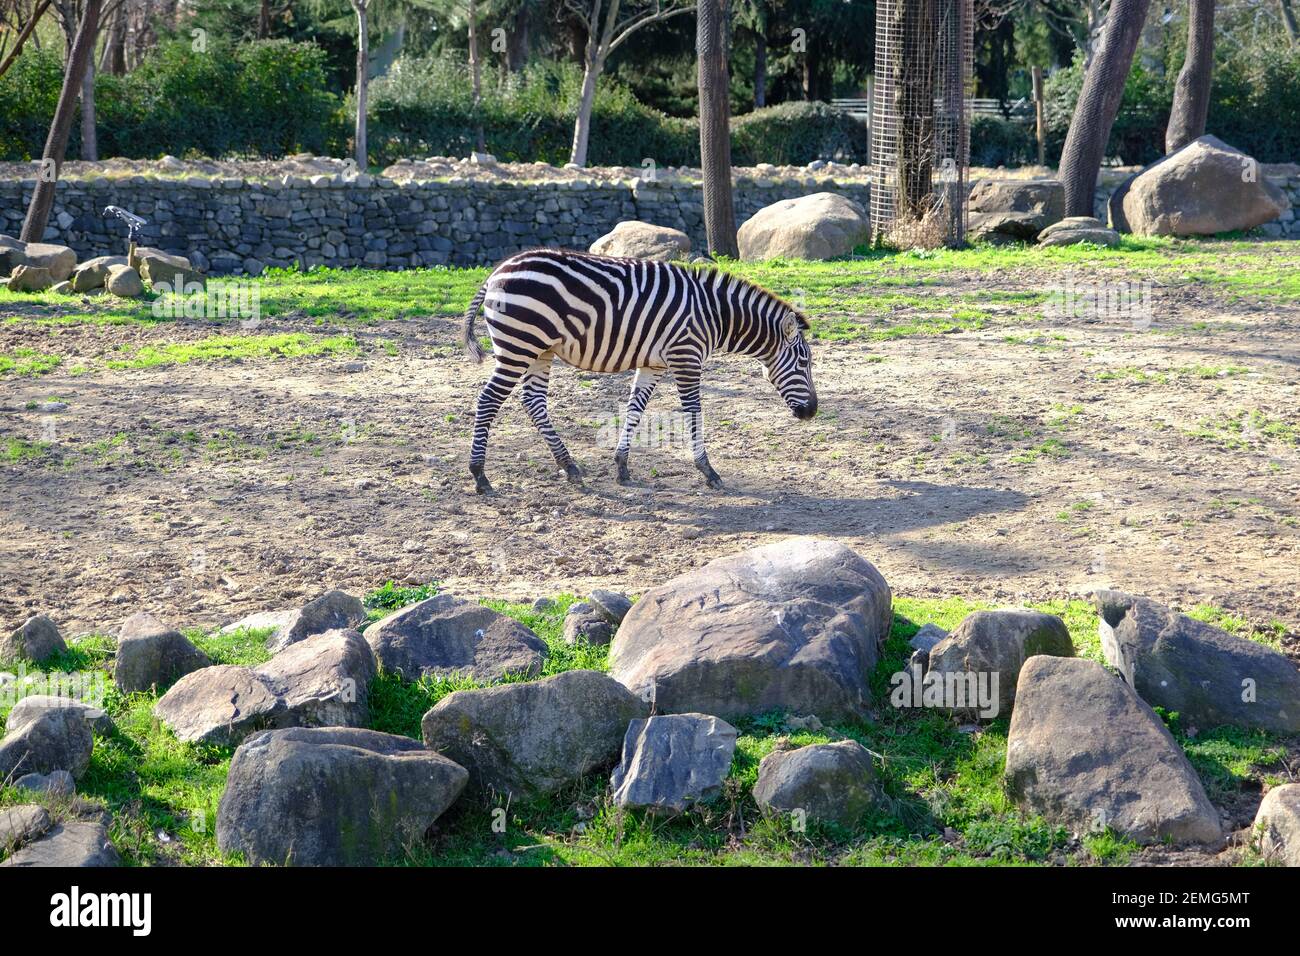 Zèbre à motif simple, noir et blanc sur l'herbe verte lors de l'alimentation sous une journée ensoleillée dans un parc zoologique. Banque D'Images